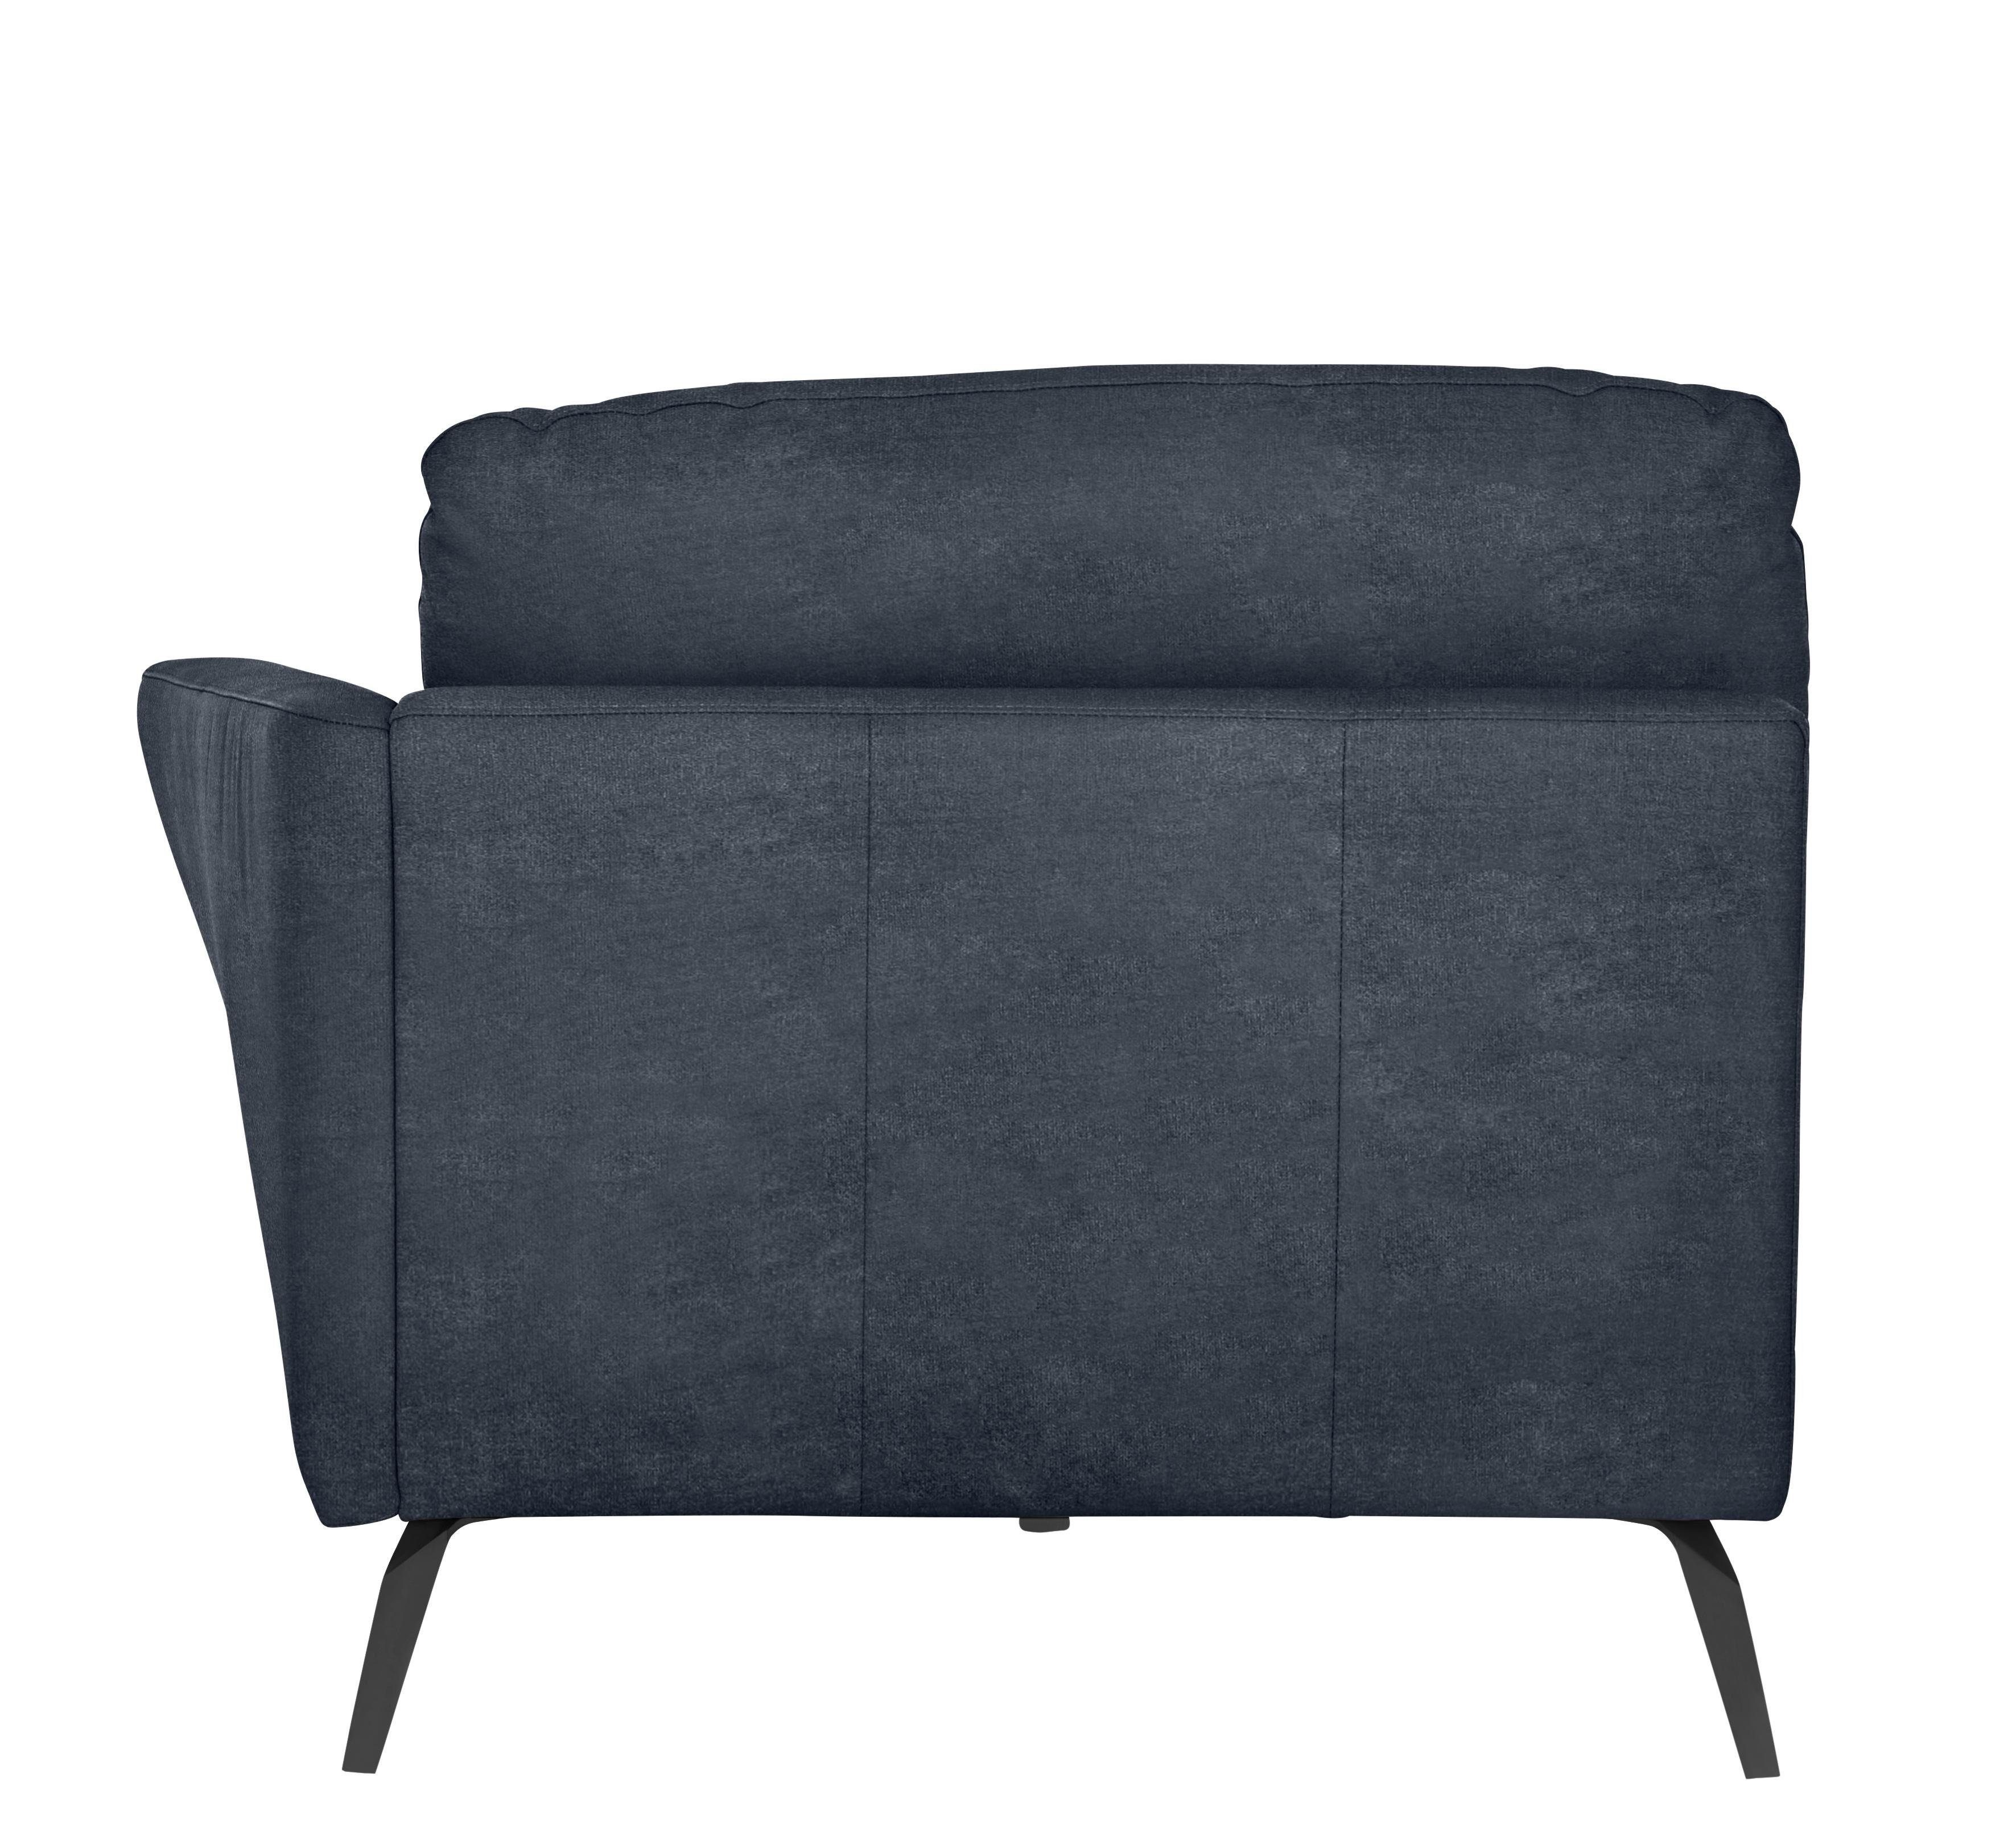 W.SCHILLIG Chaiselongue softy, mit Heftung schwarz dekorativer im Sitz, pulverbeschichtet Füße